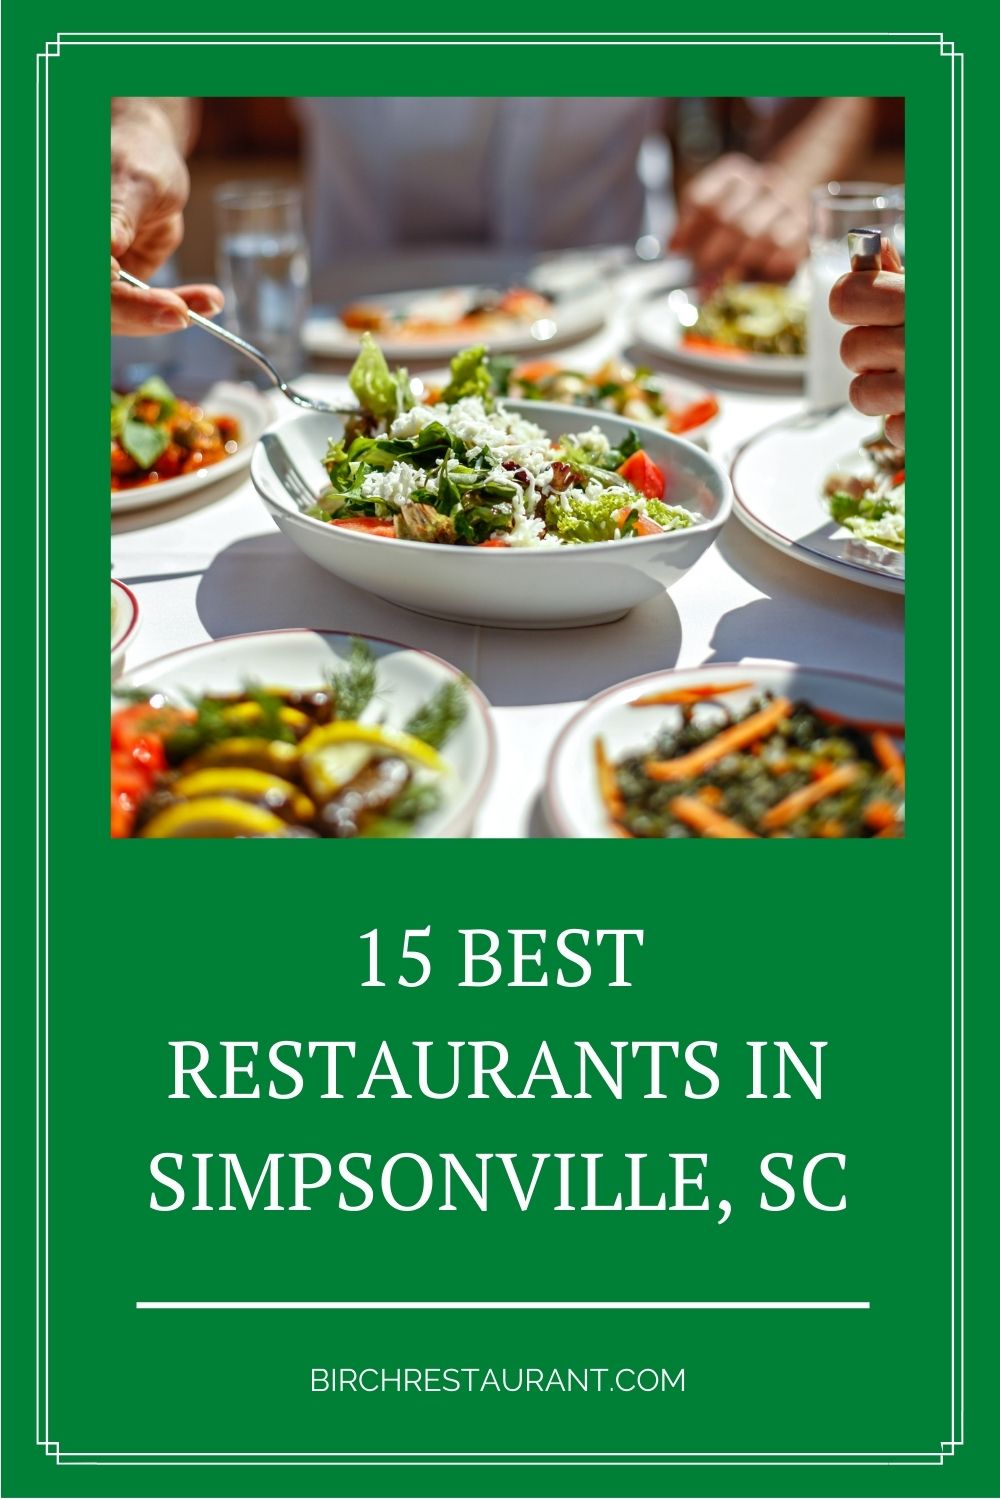 Best Restaurants in Simpsonville